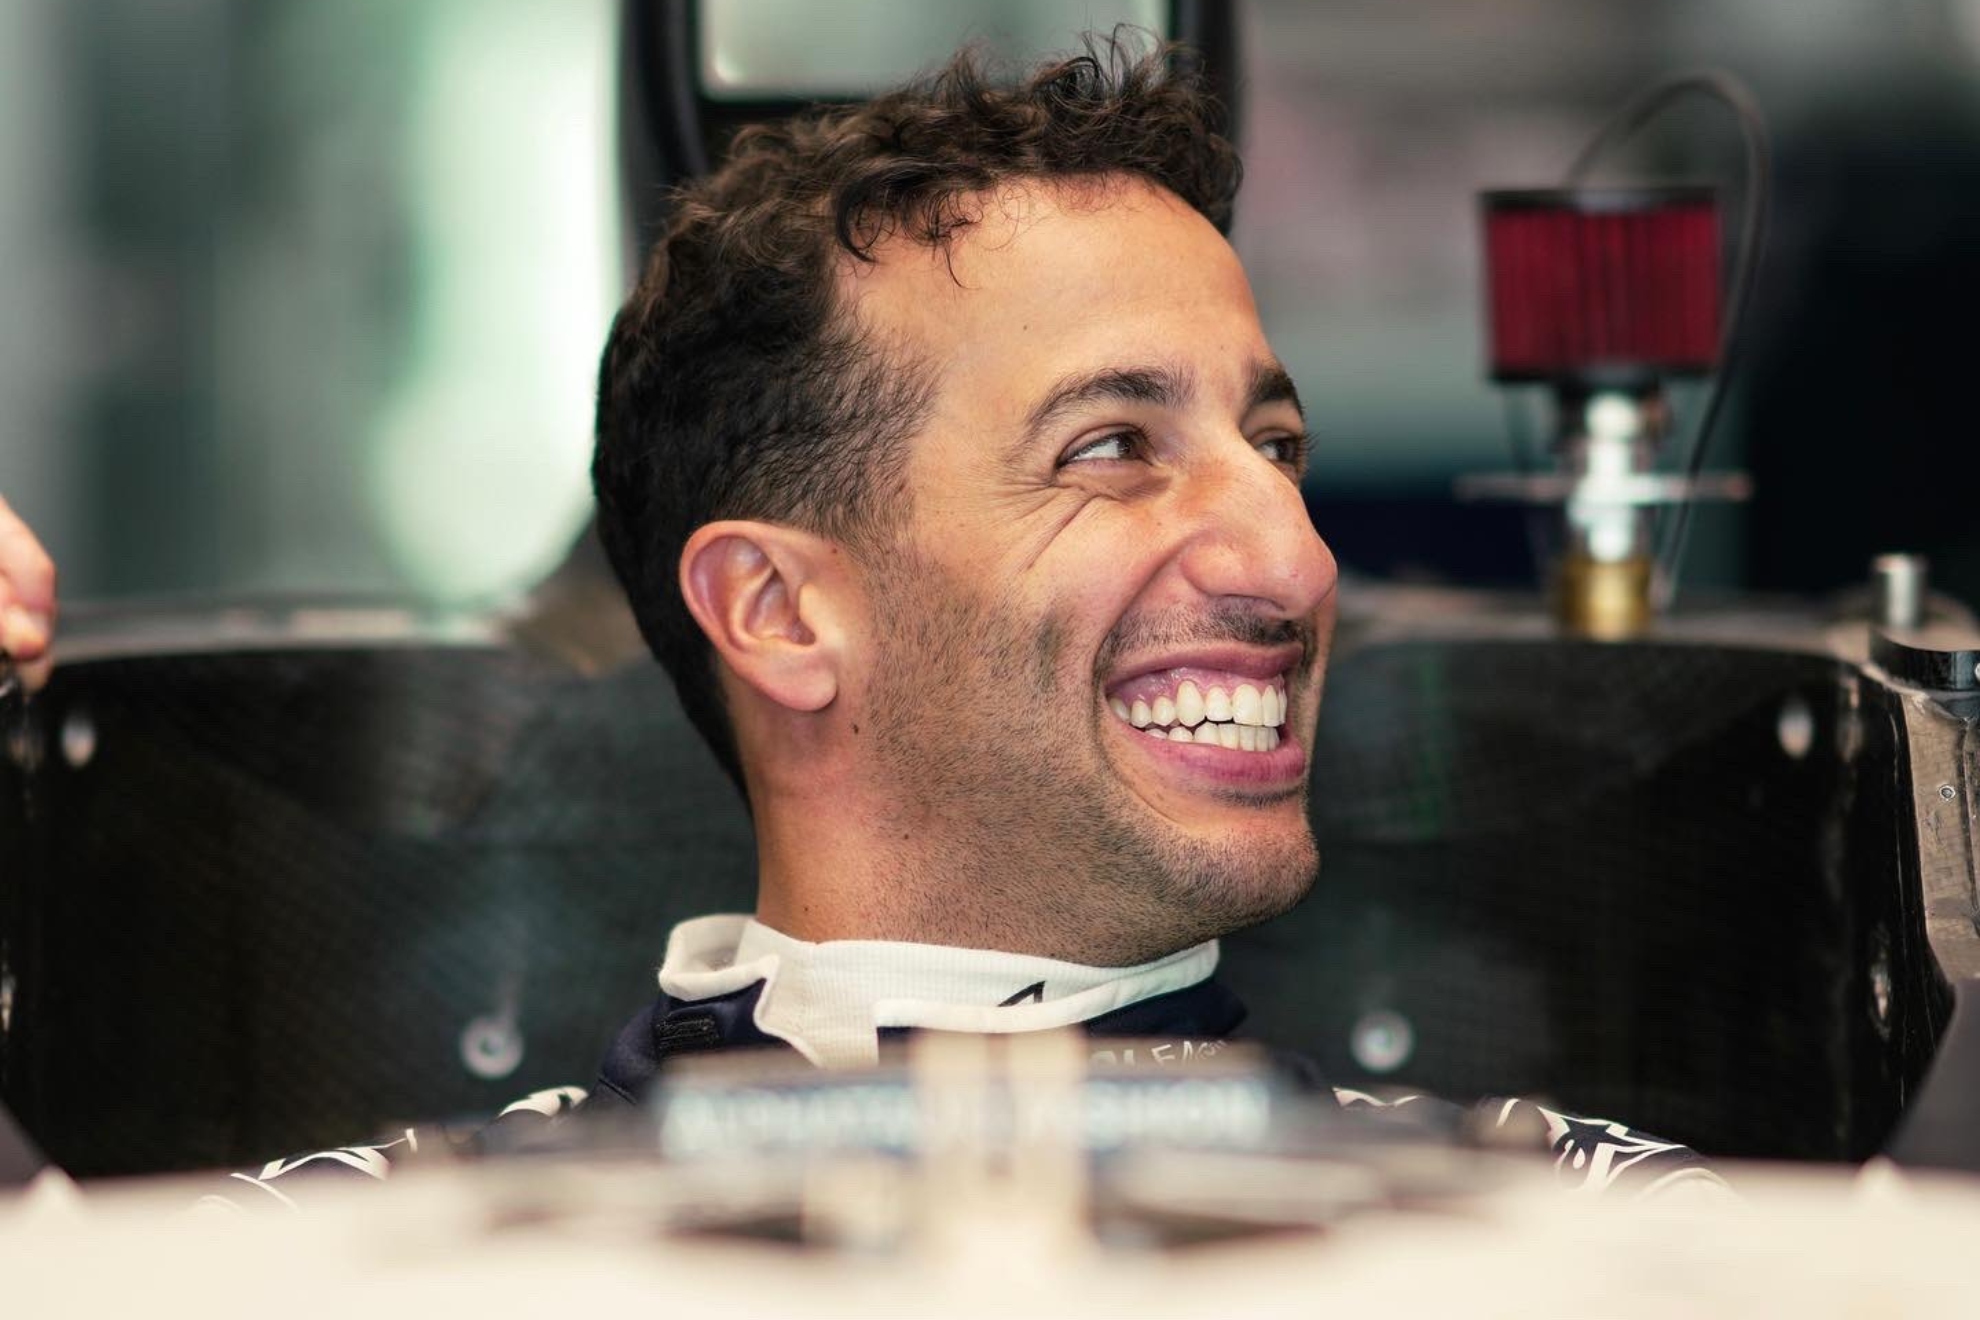 Daniel Ricciardo en el que va a ser su nuevo monoplaza esta temporada